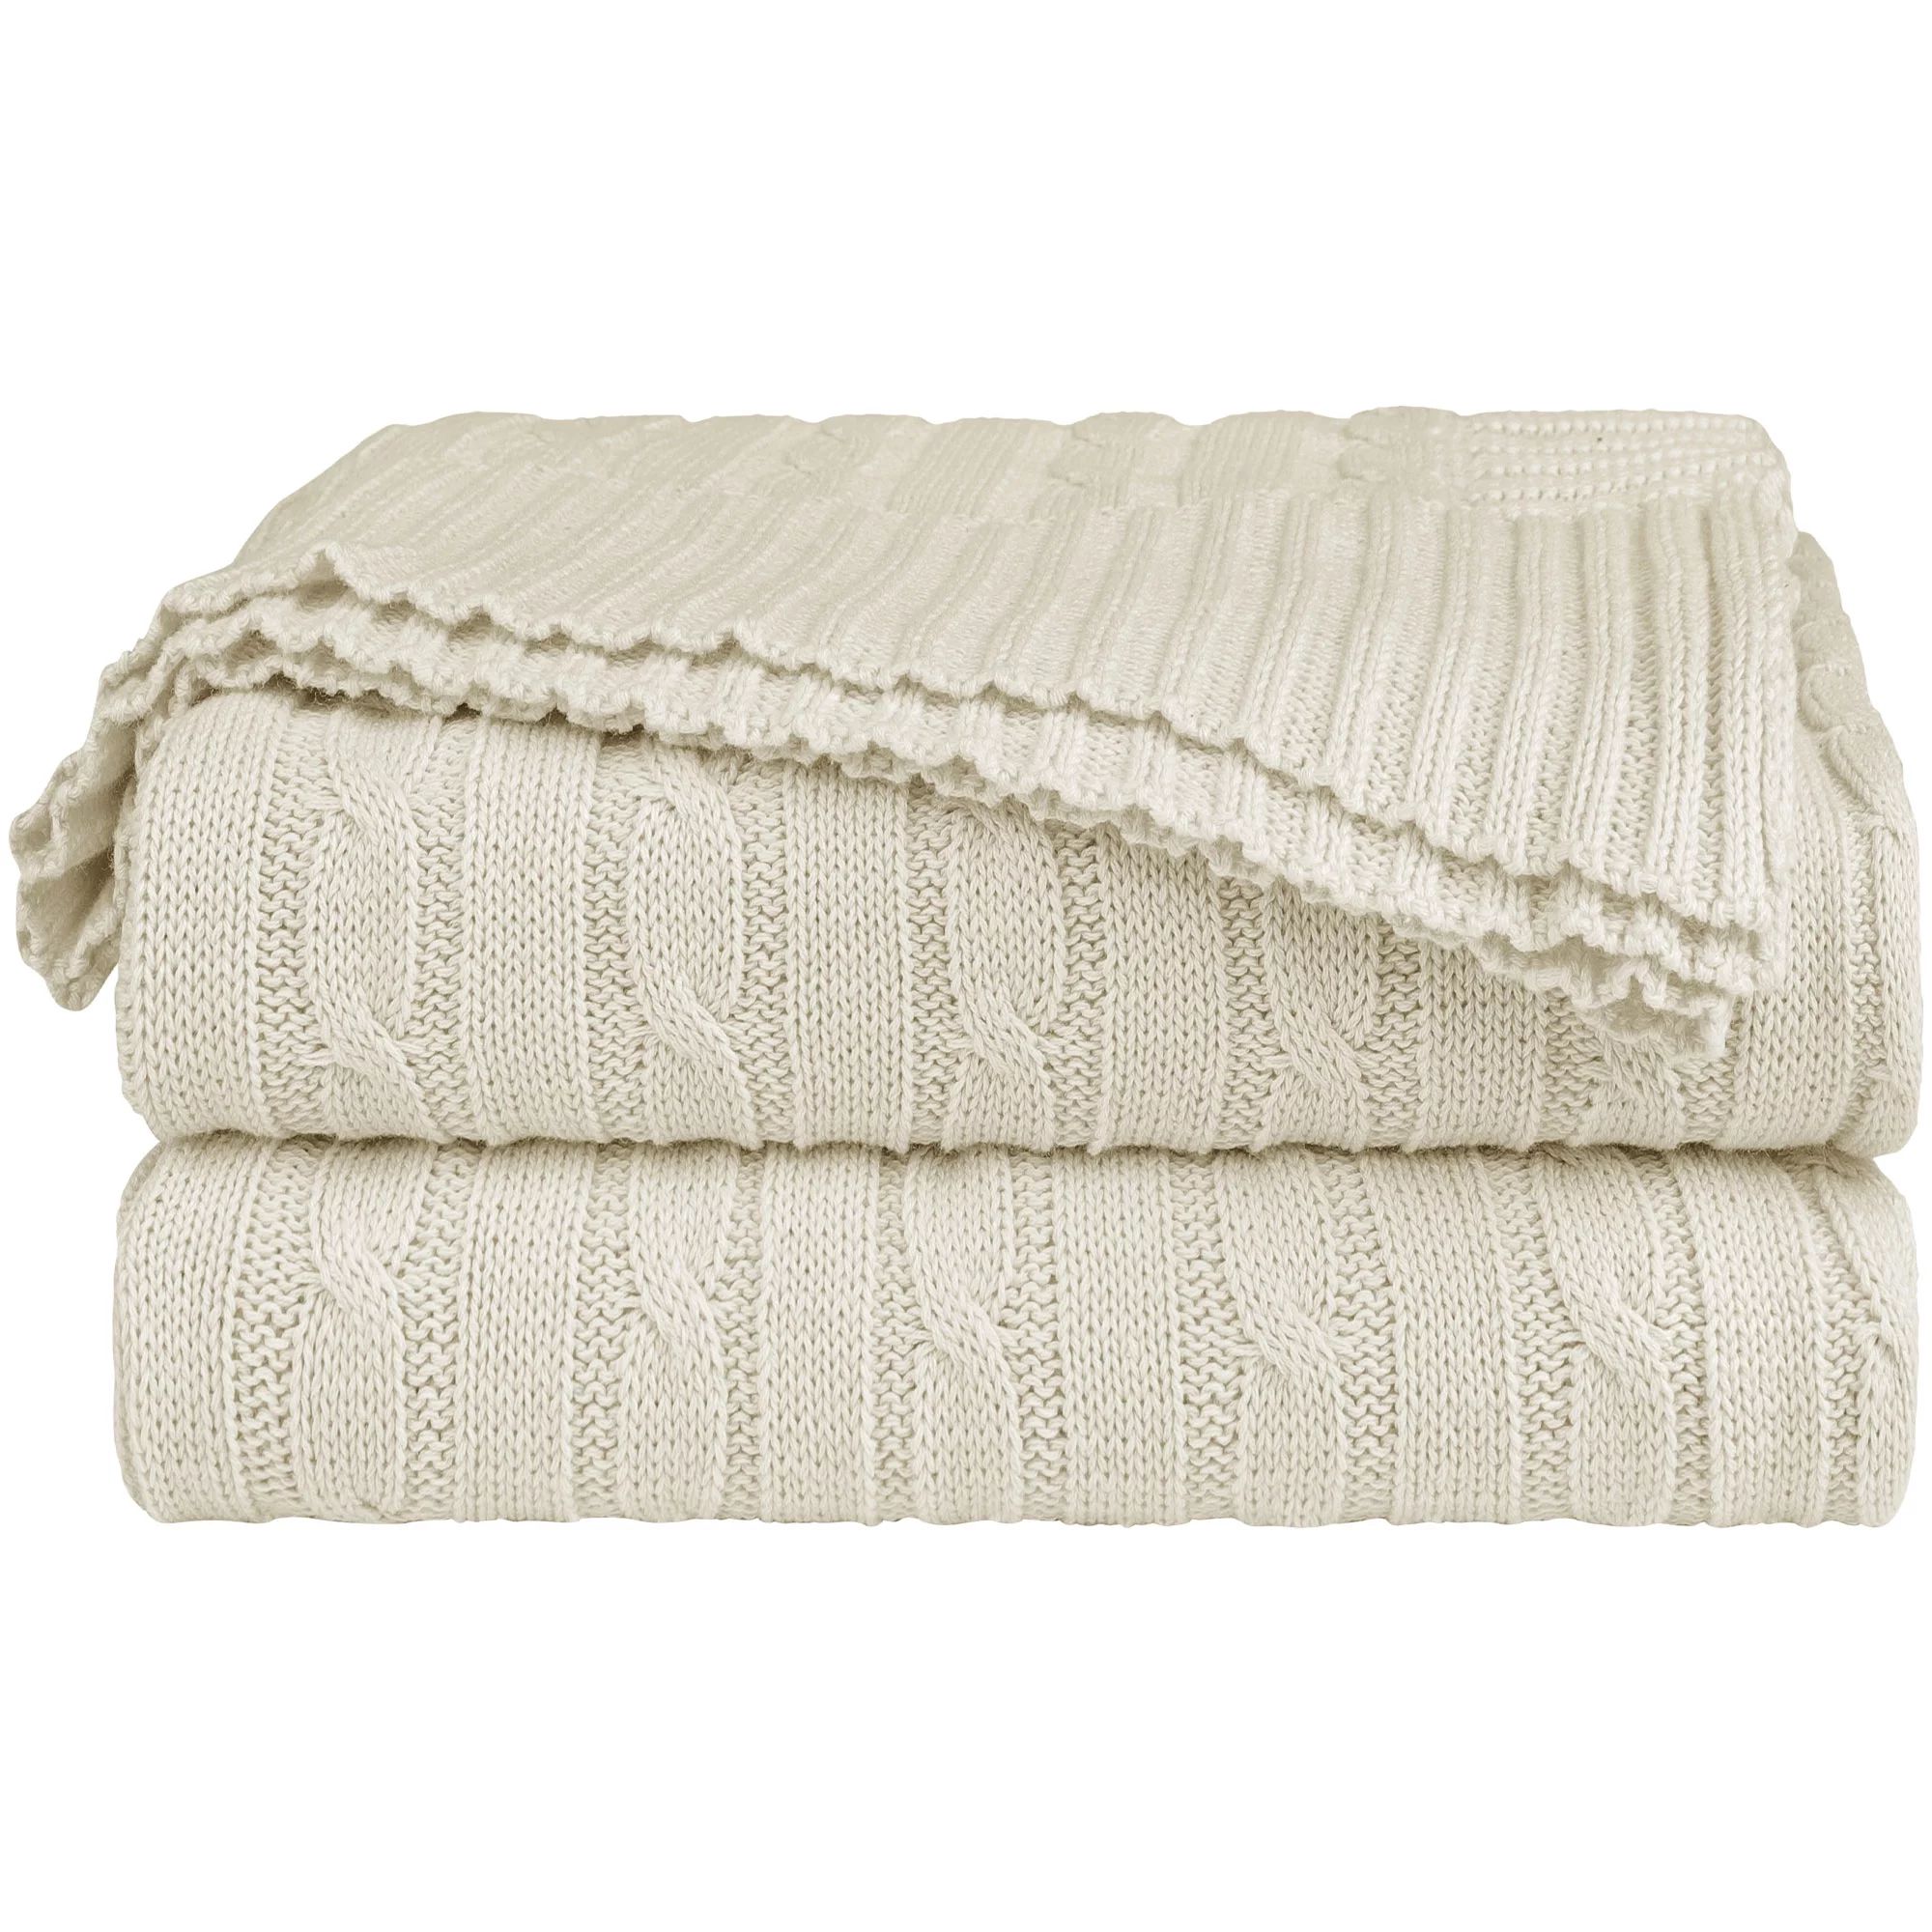 Unique Bargains 100% Cotton Cable Knit Throw Bed Blanket Beige 60" x 78" - Walmart.com | Walmart (US)